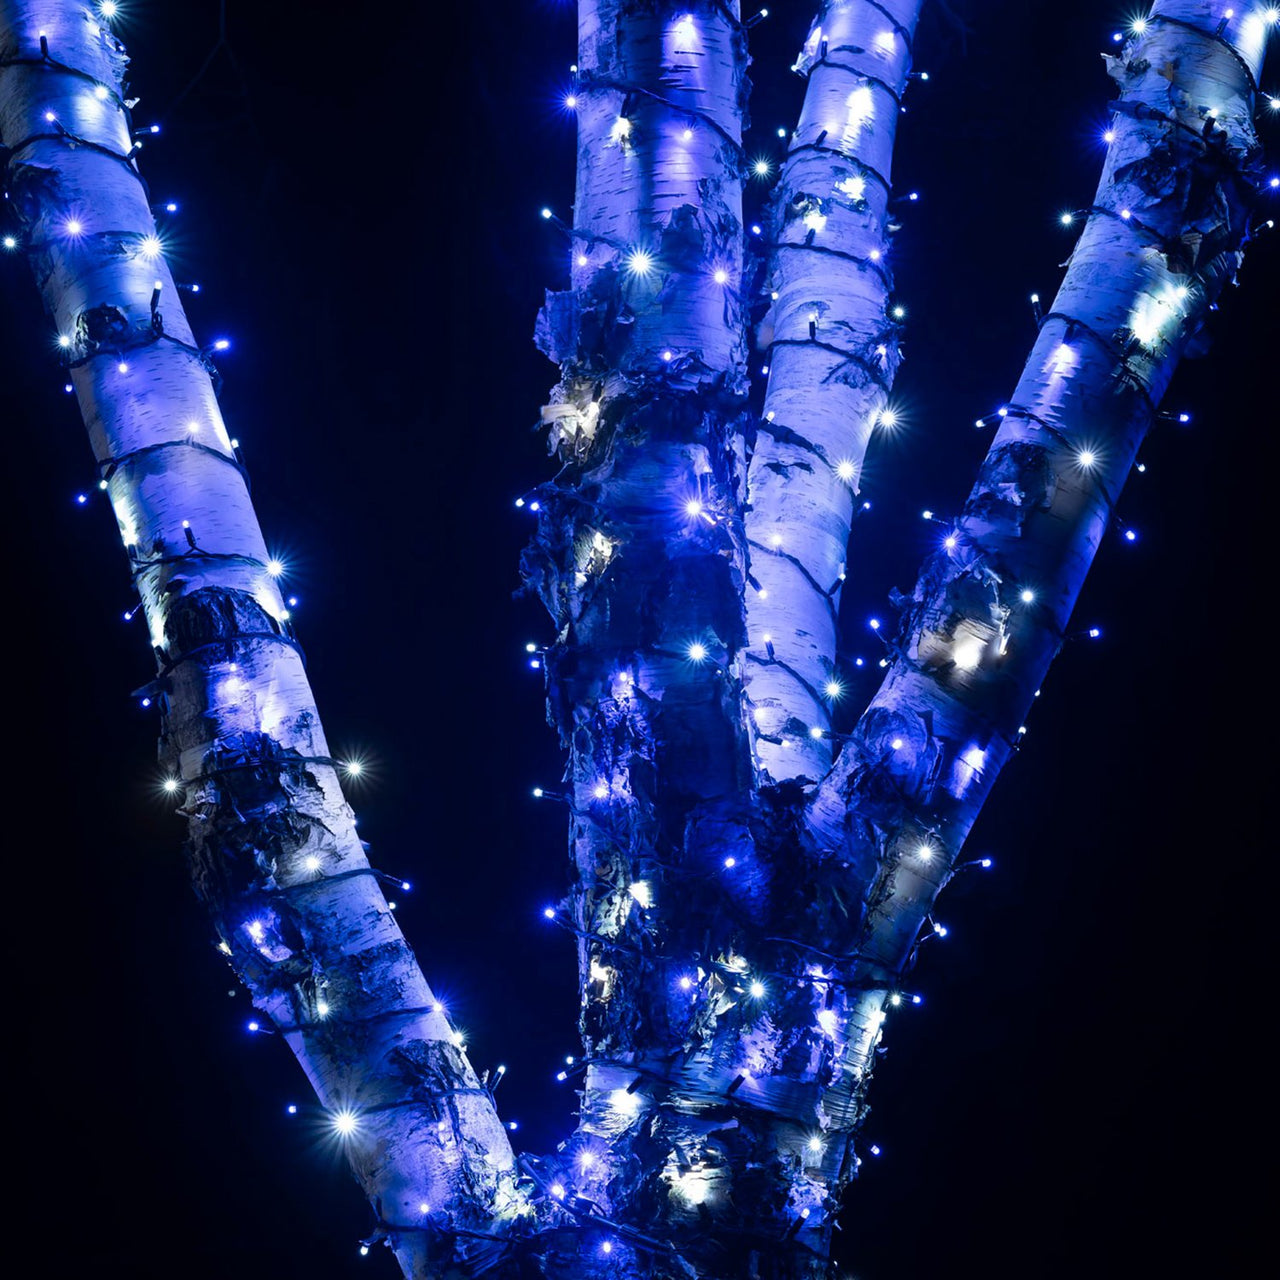 Guirlande Lumineuse 185m 1850 LED Bleue et Blanche Câble Noir Raccordable Série Pro